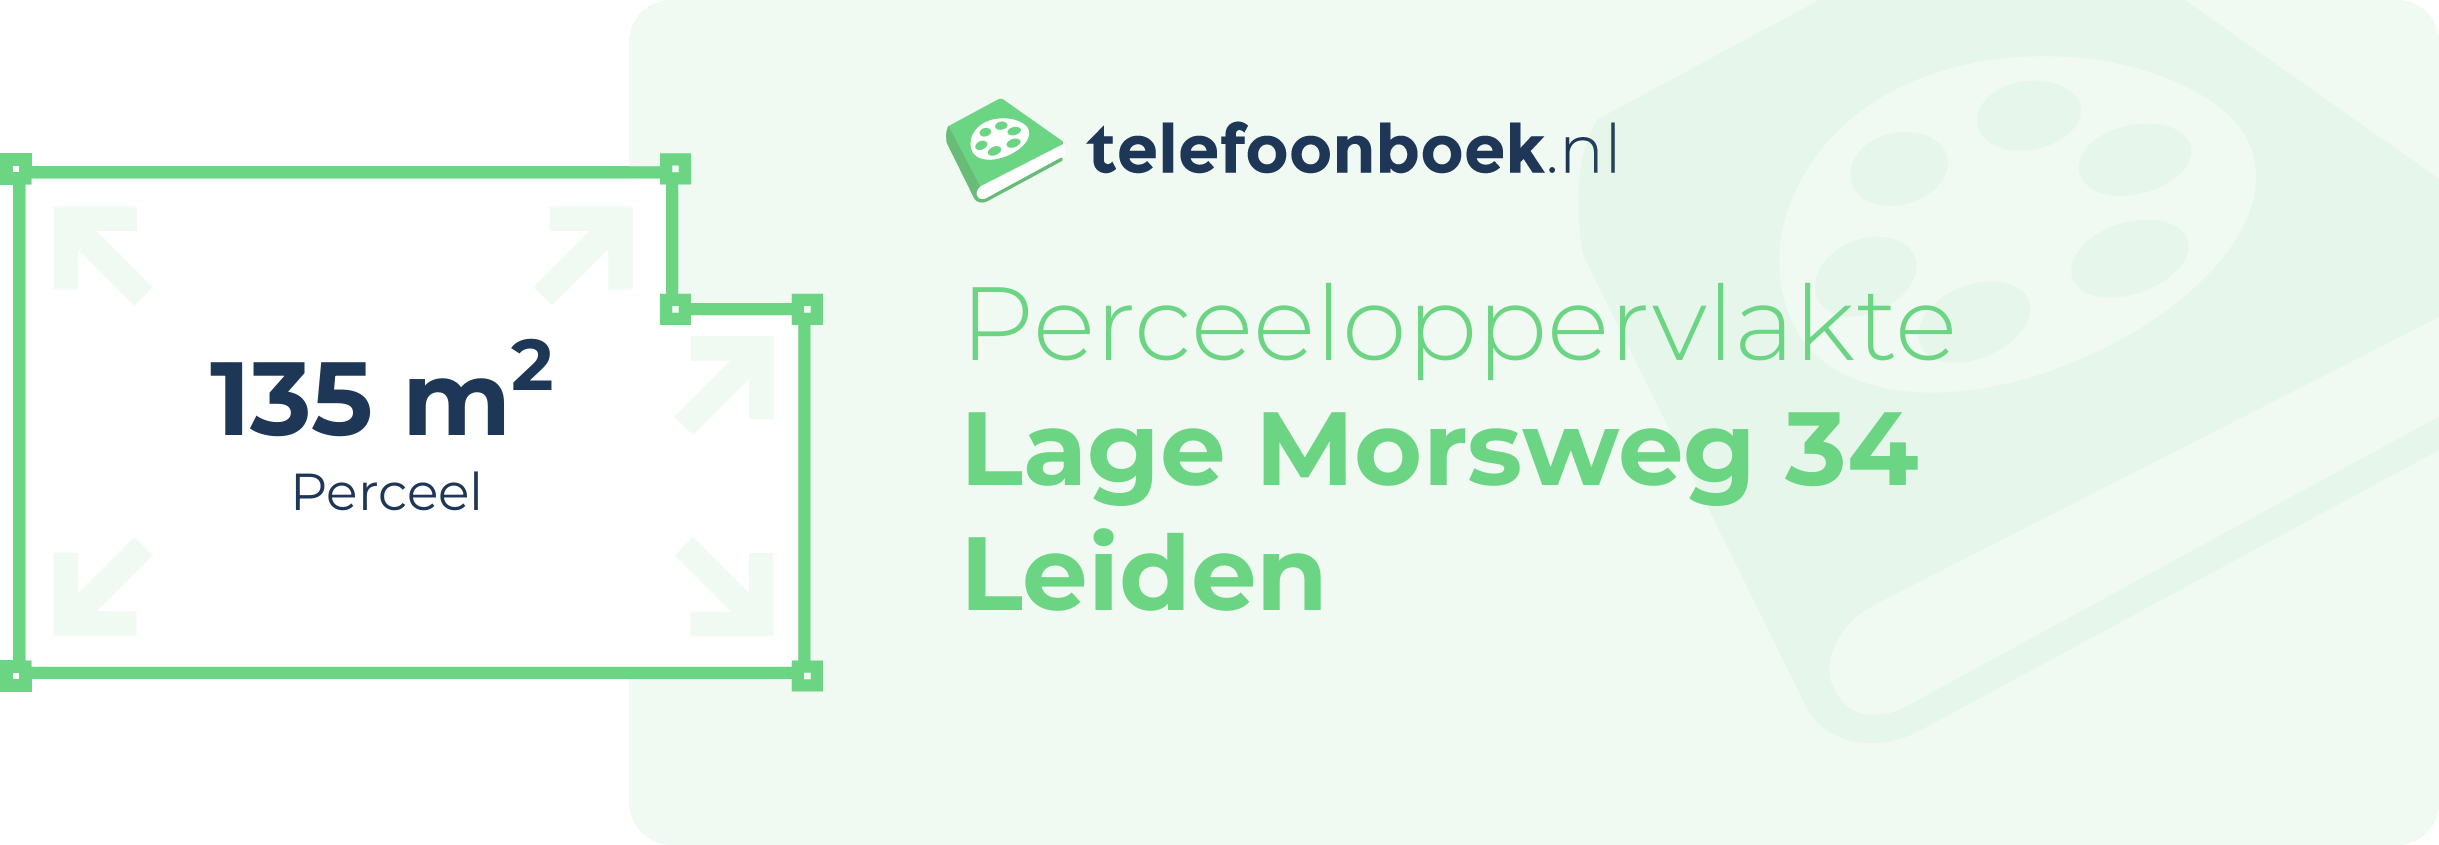 Perceeloppervlakte Lage Morsweg 34 Leiden